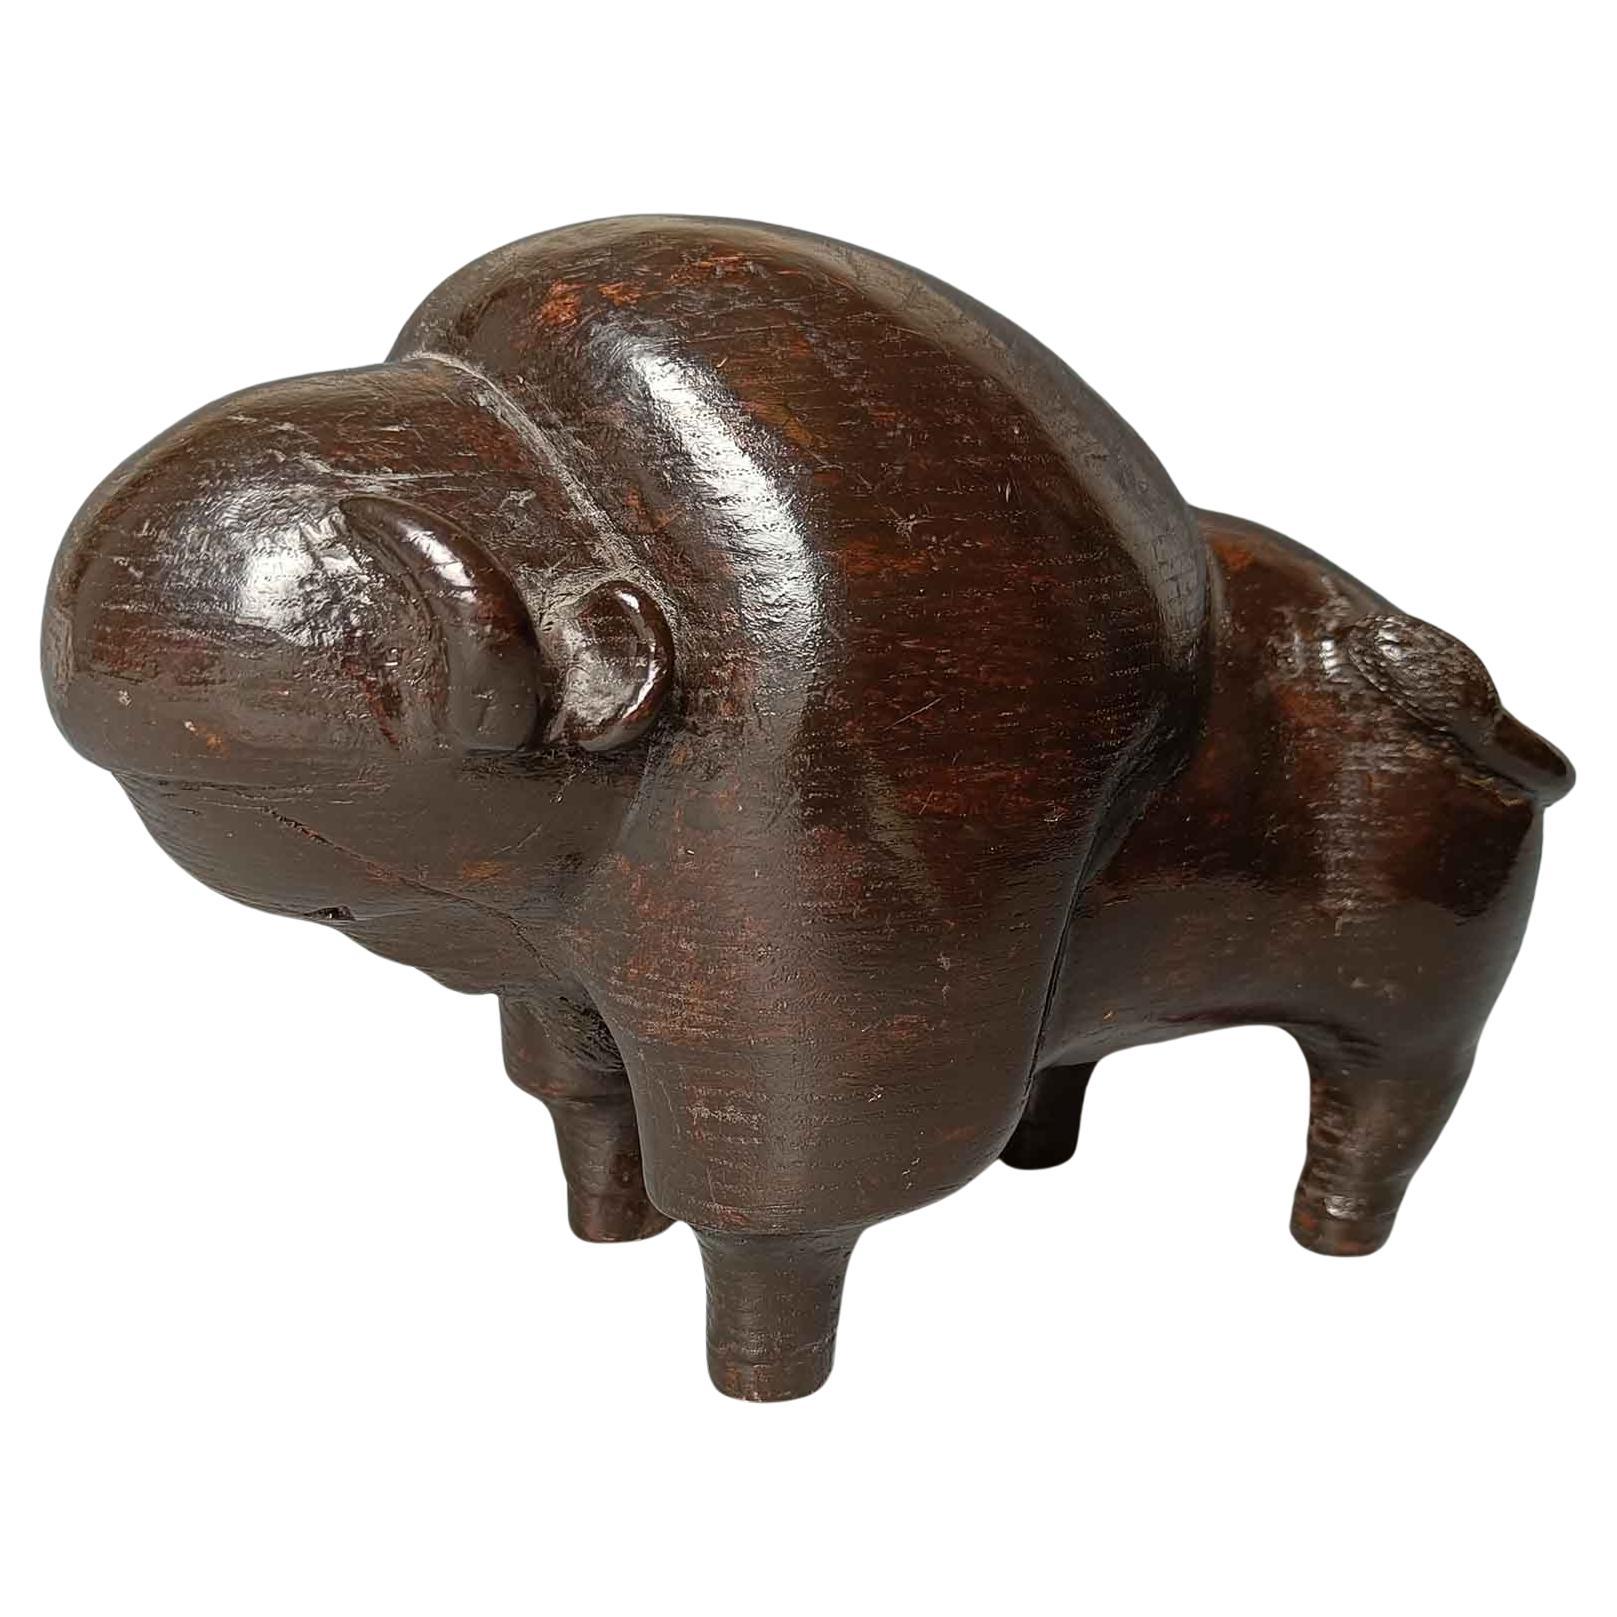 Art populaire américain vintage en bois sculpté  Bison Native Decorative Antiquities Décor